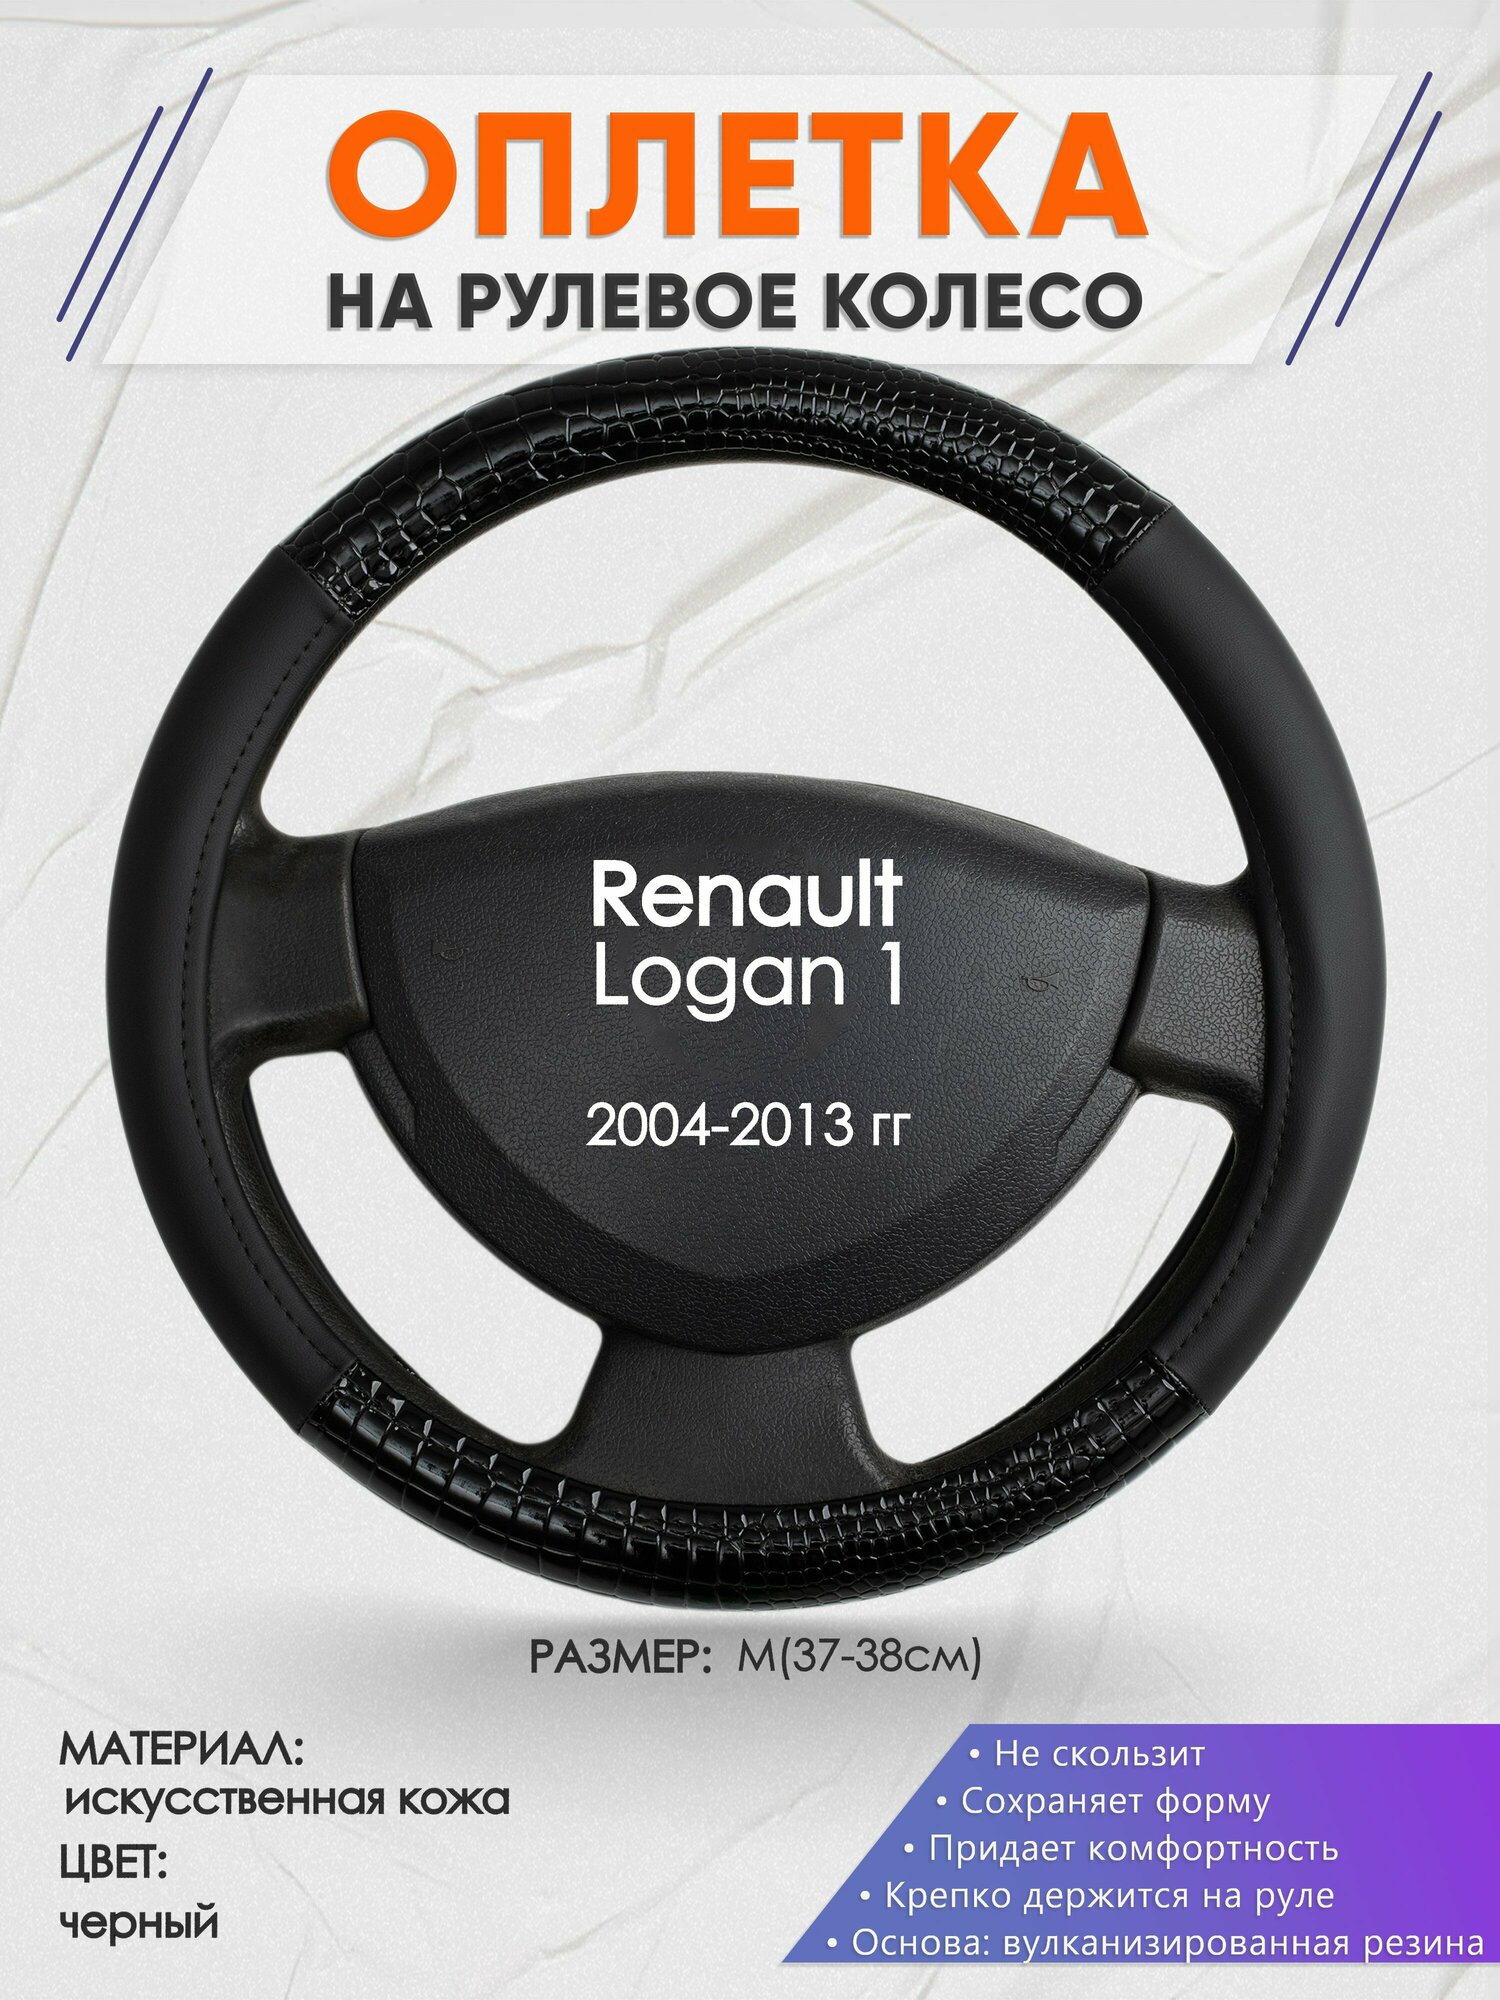 Оплетка на руль для Renault Logan 1(Рено Логан 1) 2004-2013, M(37-38см), Искусственная кожа 83